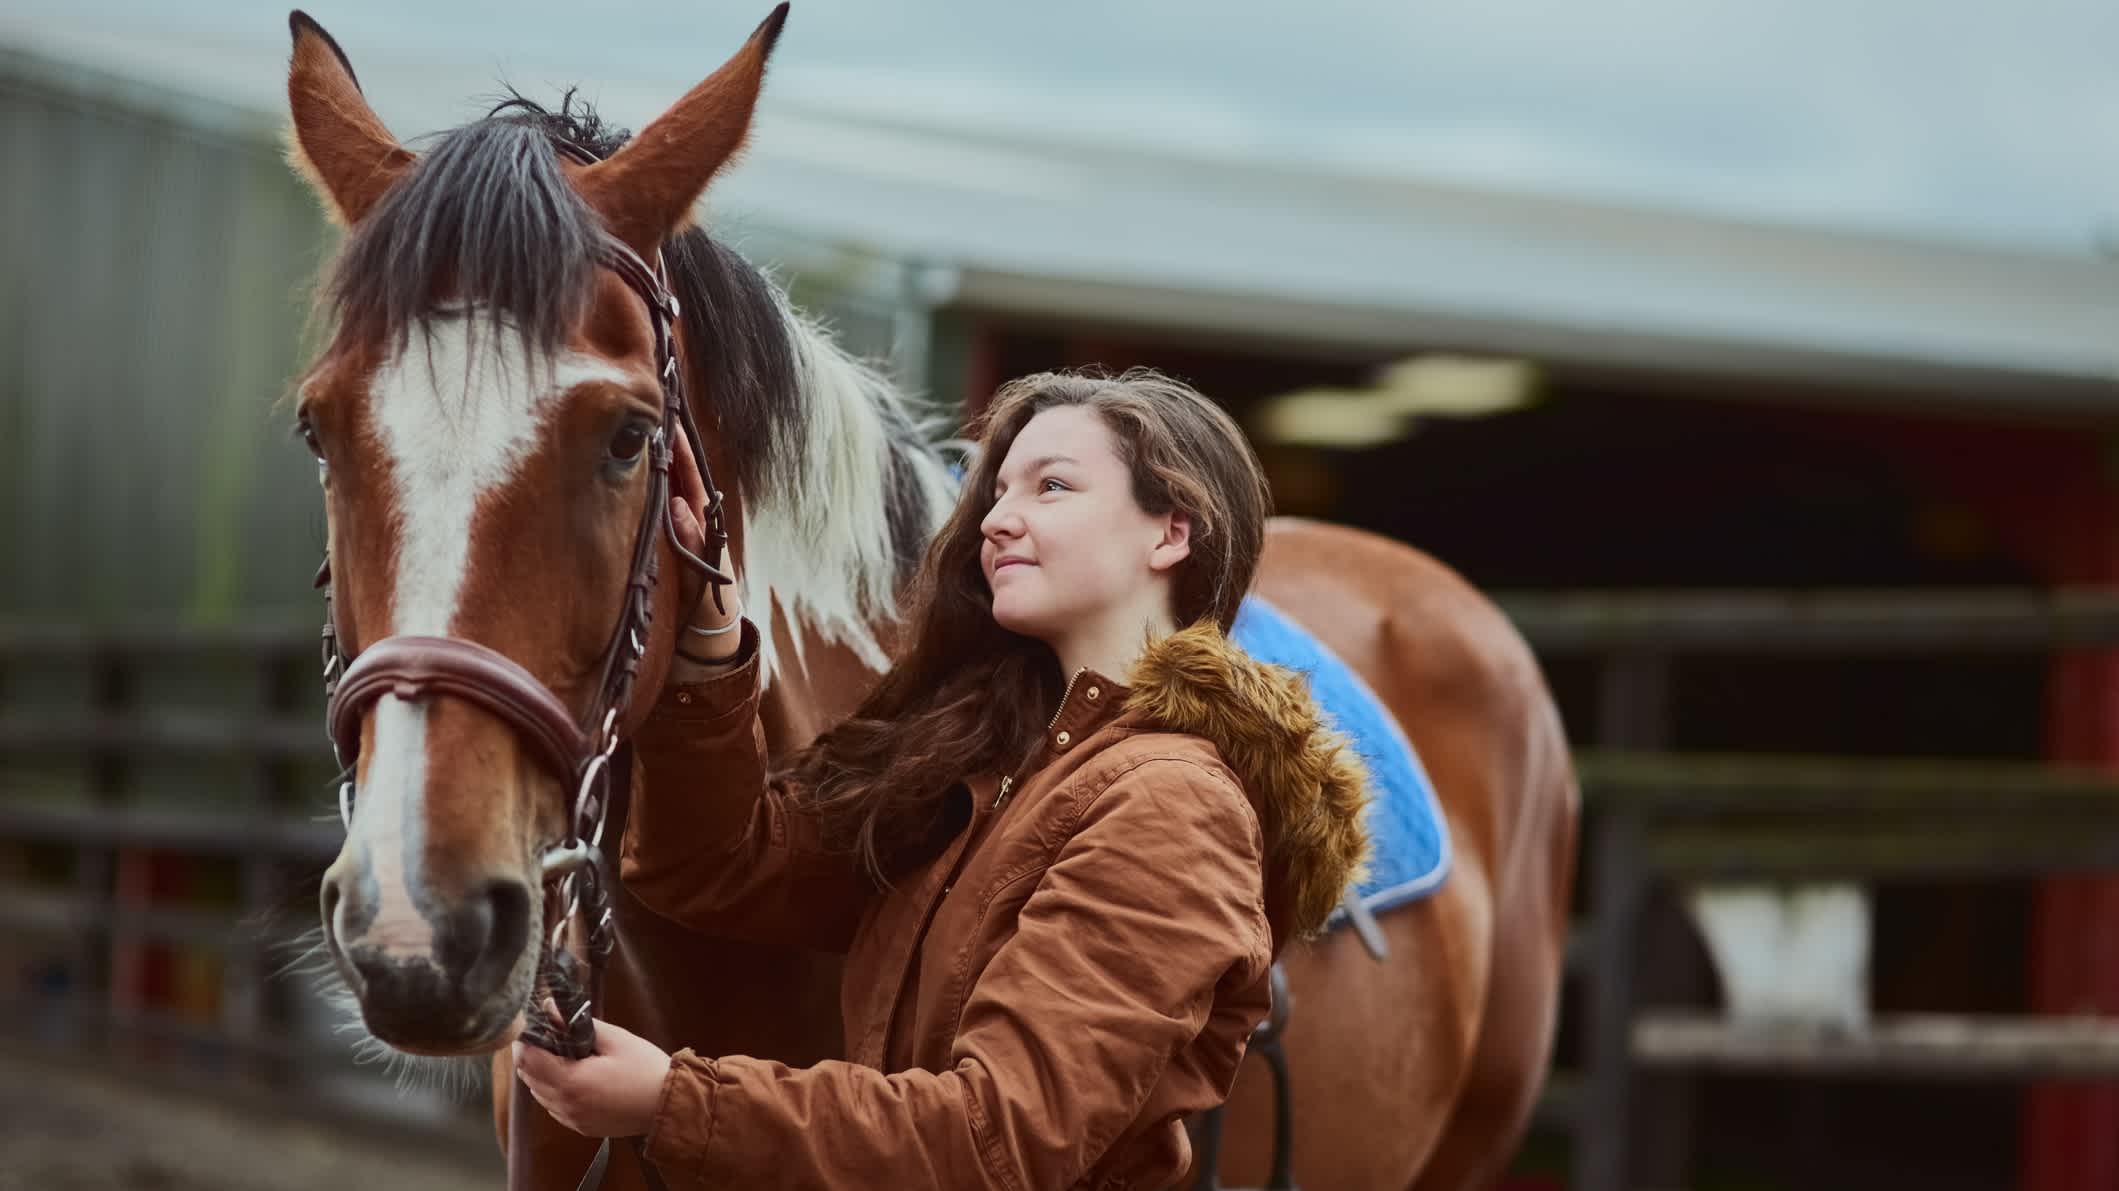 Aufnahme eines Teenagers, das neben ihrem Pony auf einer Farm steht

